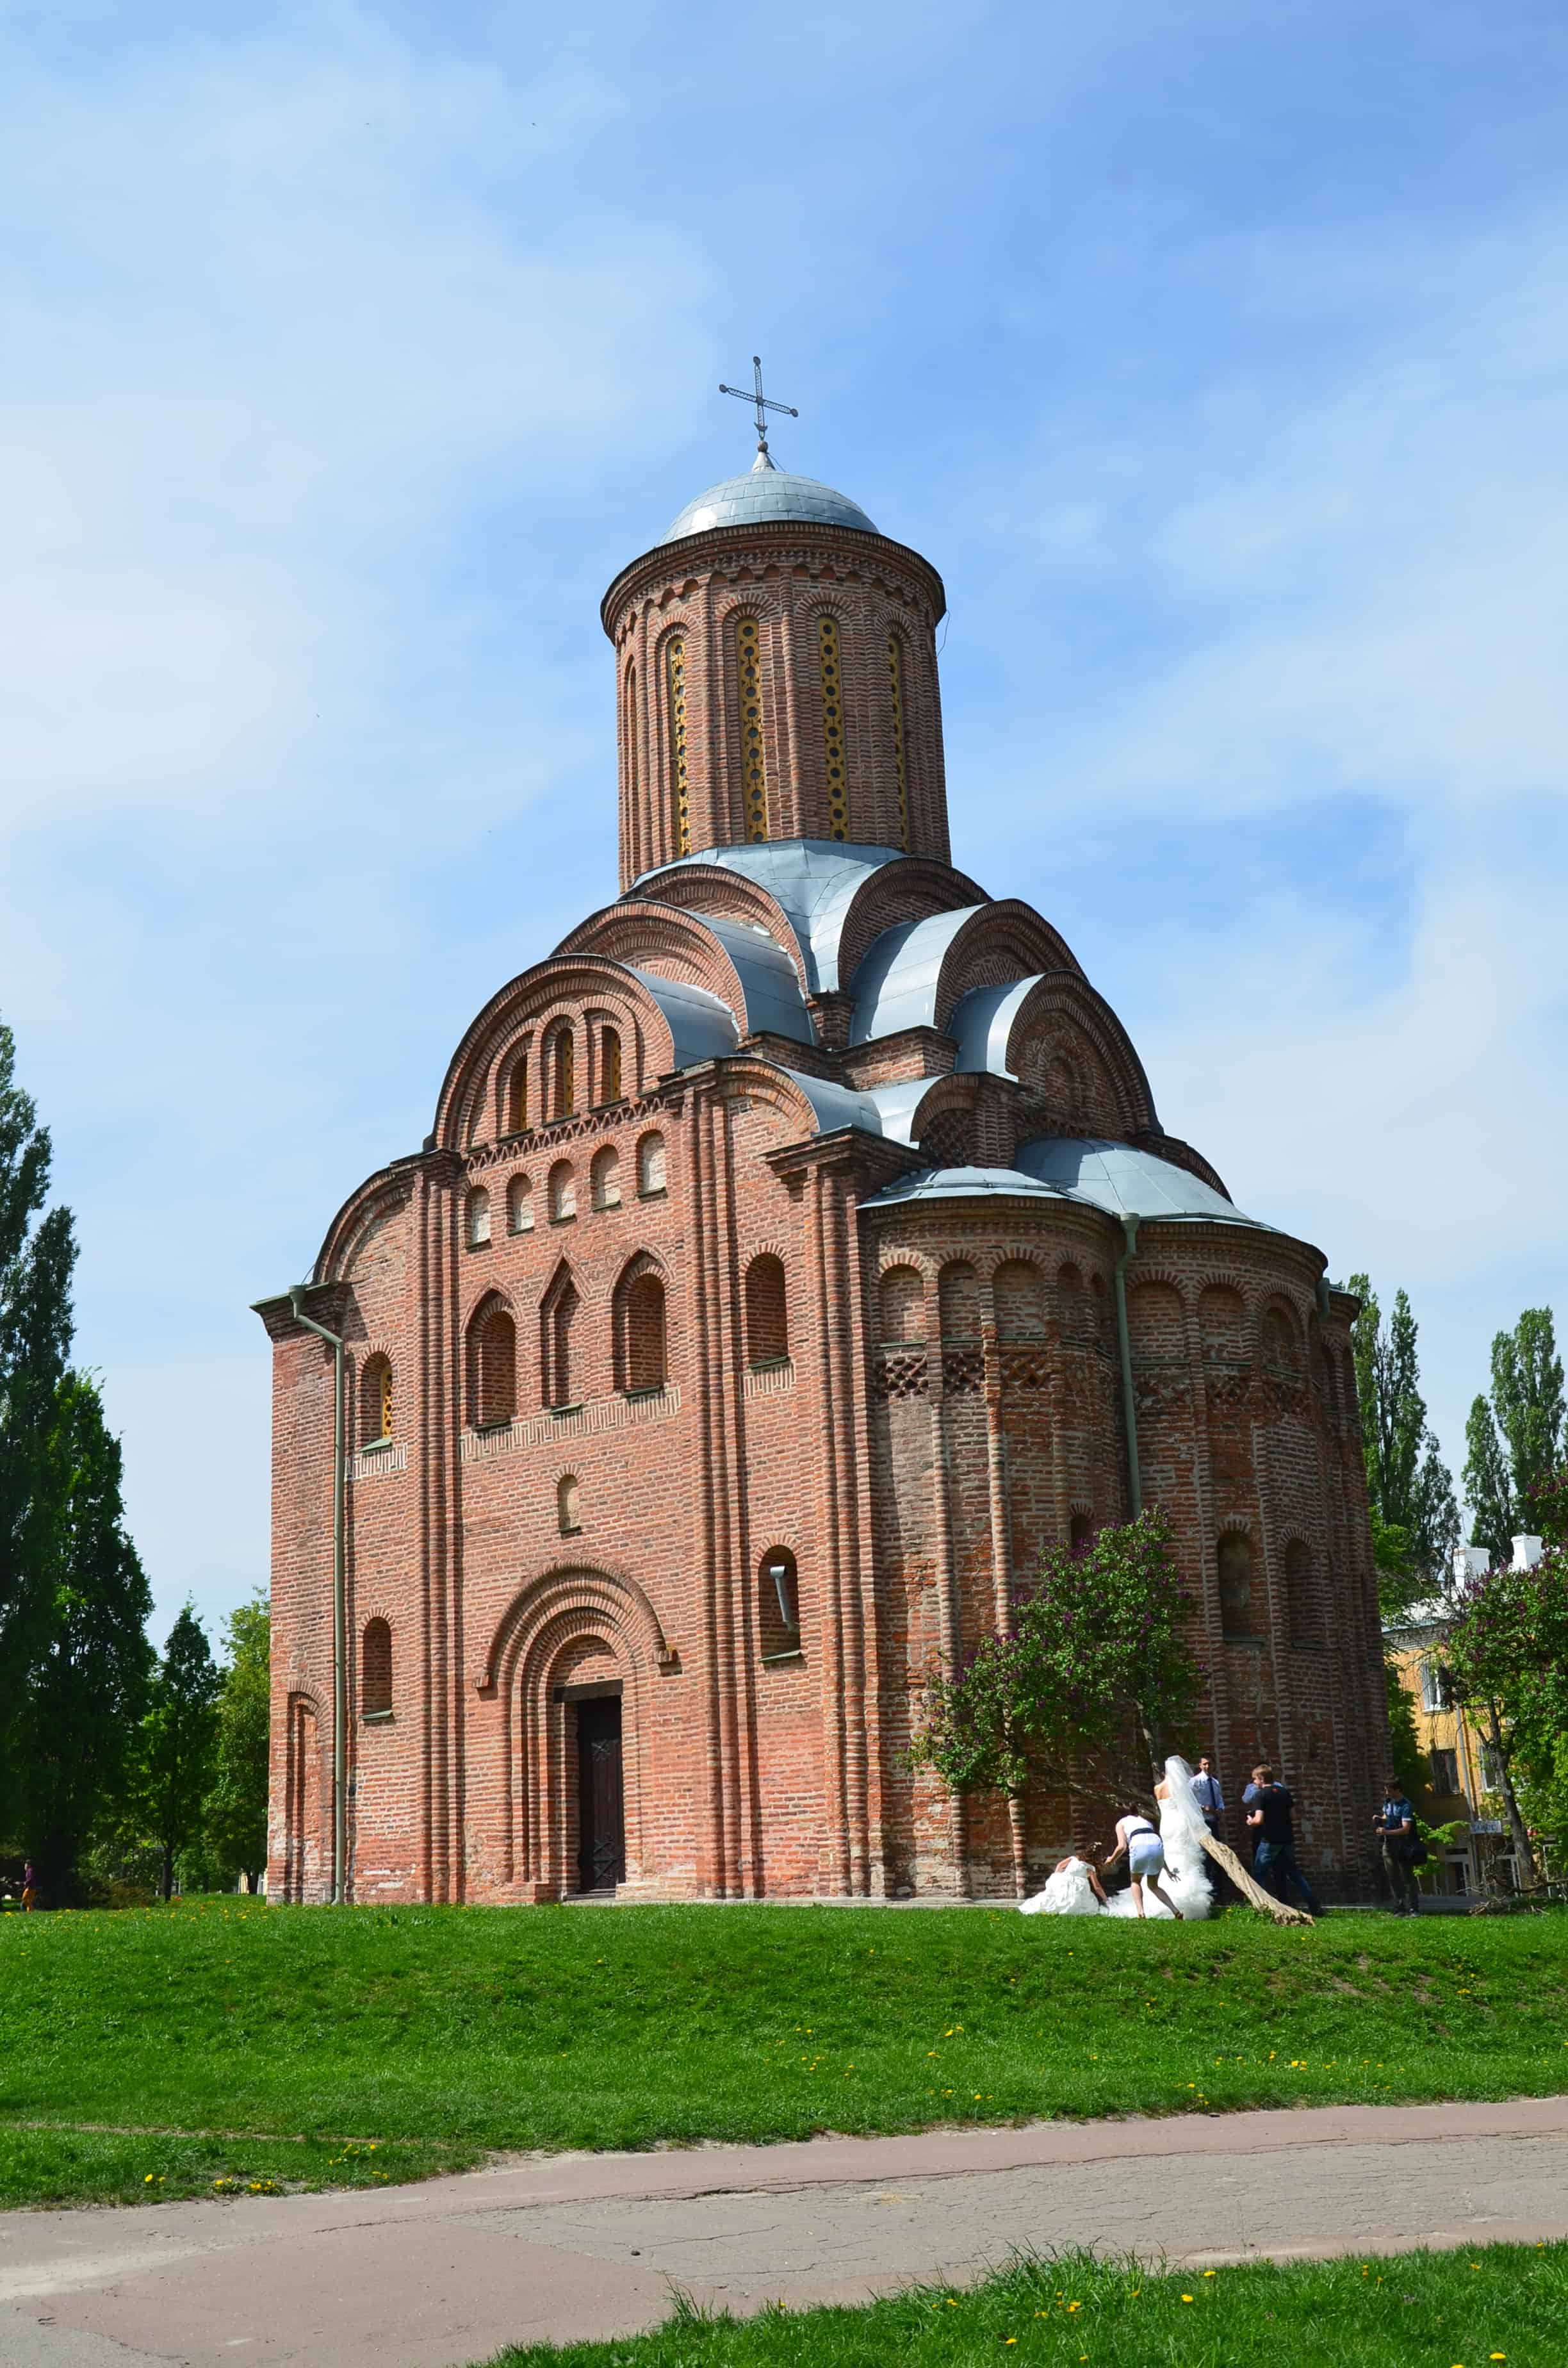 Pyatnitska Church in Chernihiv, Ukraine